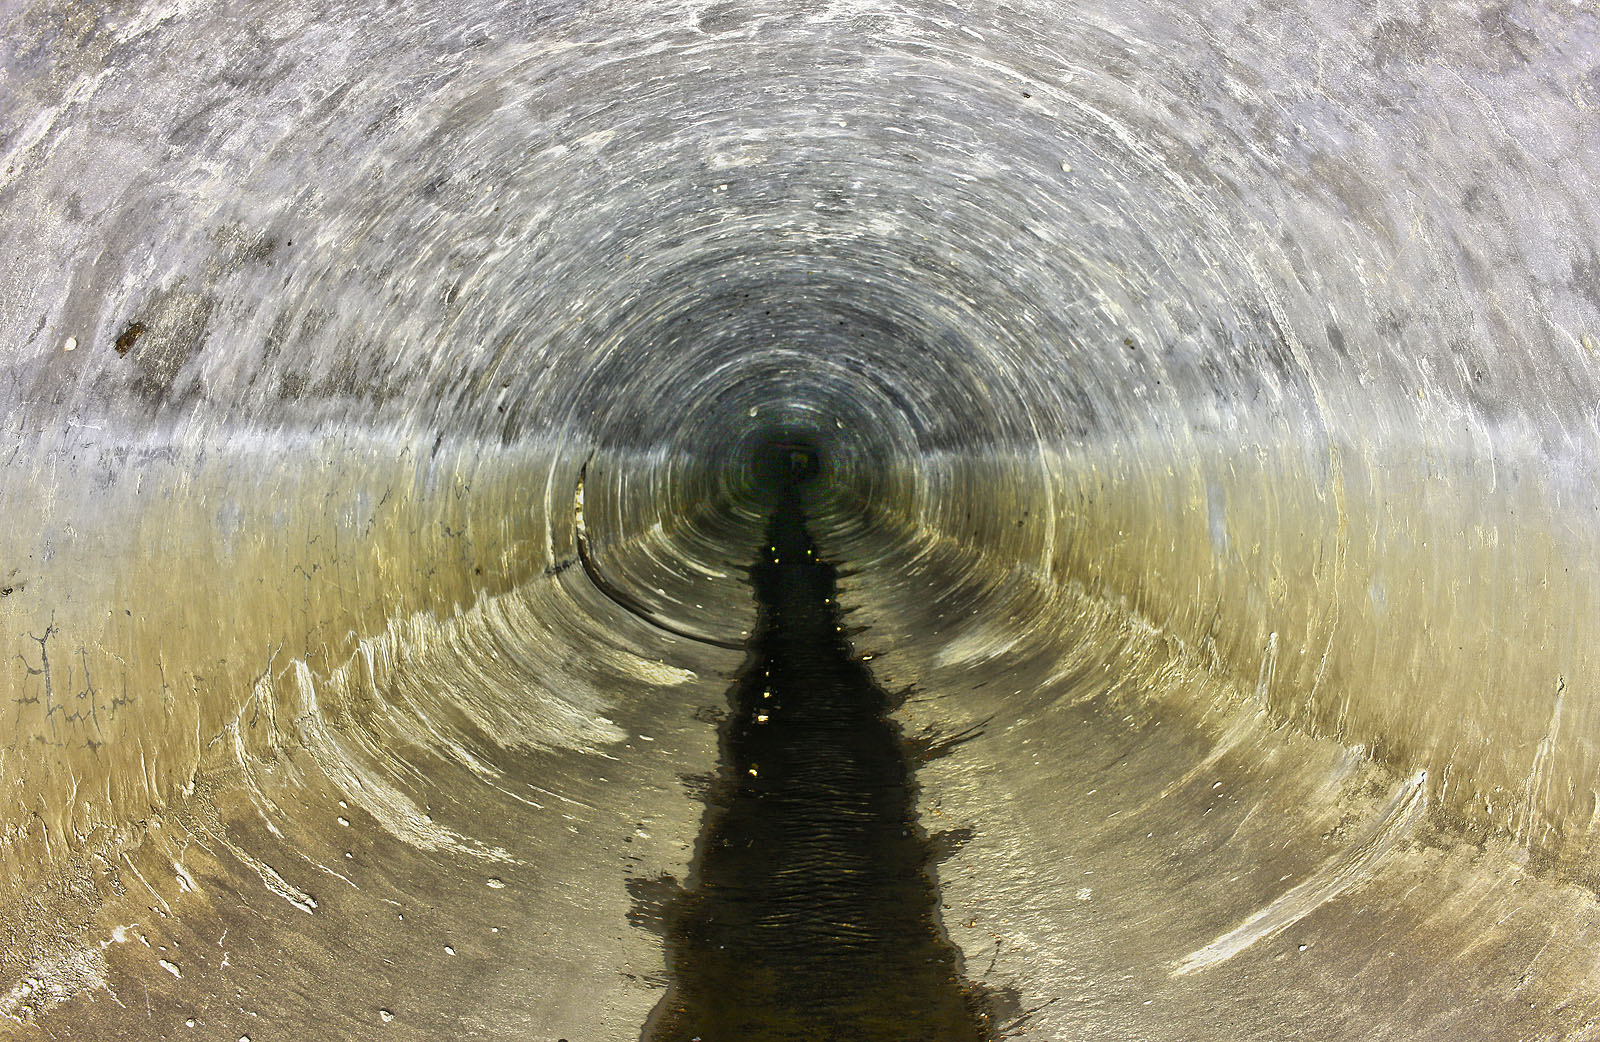 Počáteční úsek tunelu tvoří asi 200 m dlouhá přímá roura tlamového profilu o výšce zhruba 120 cm. Na stěnách je vidět, do jaké výšky až může dosáhnout voda.